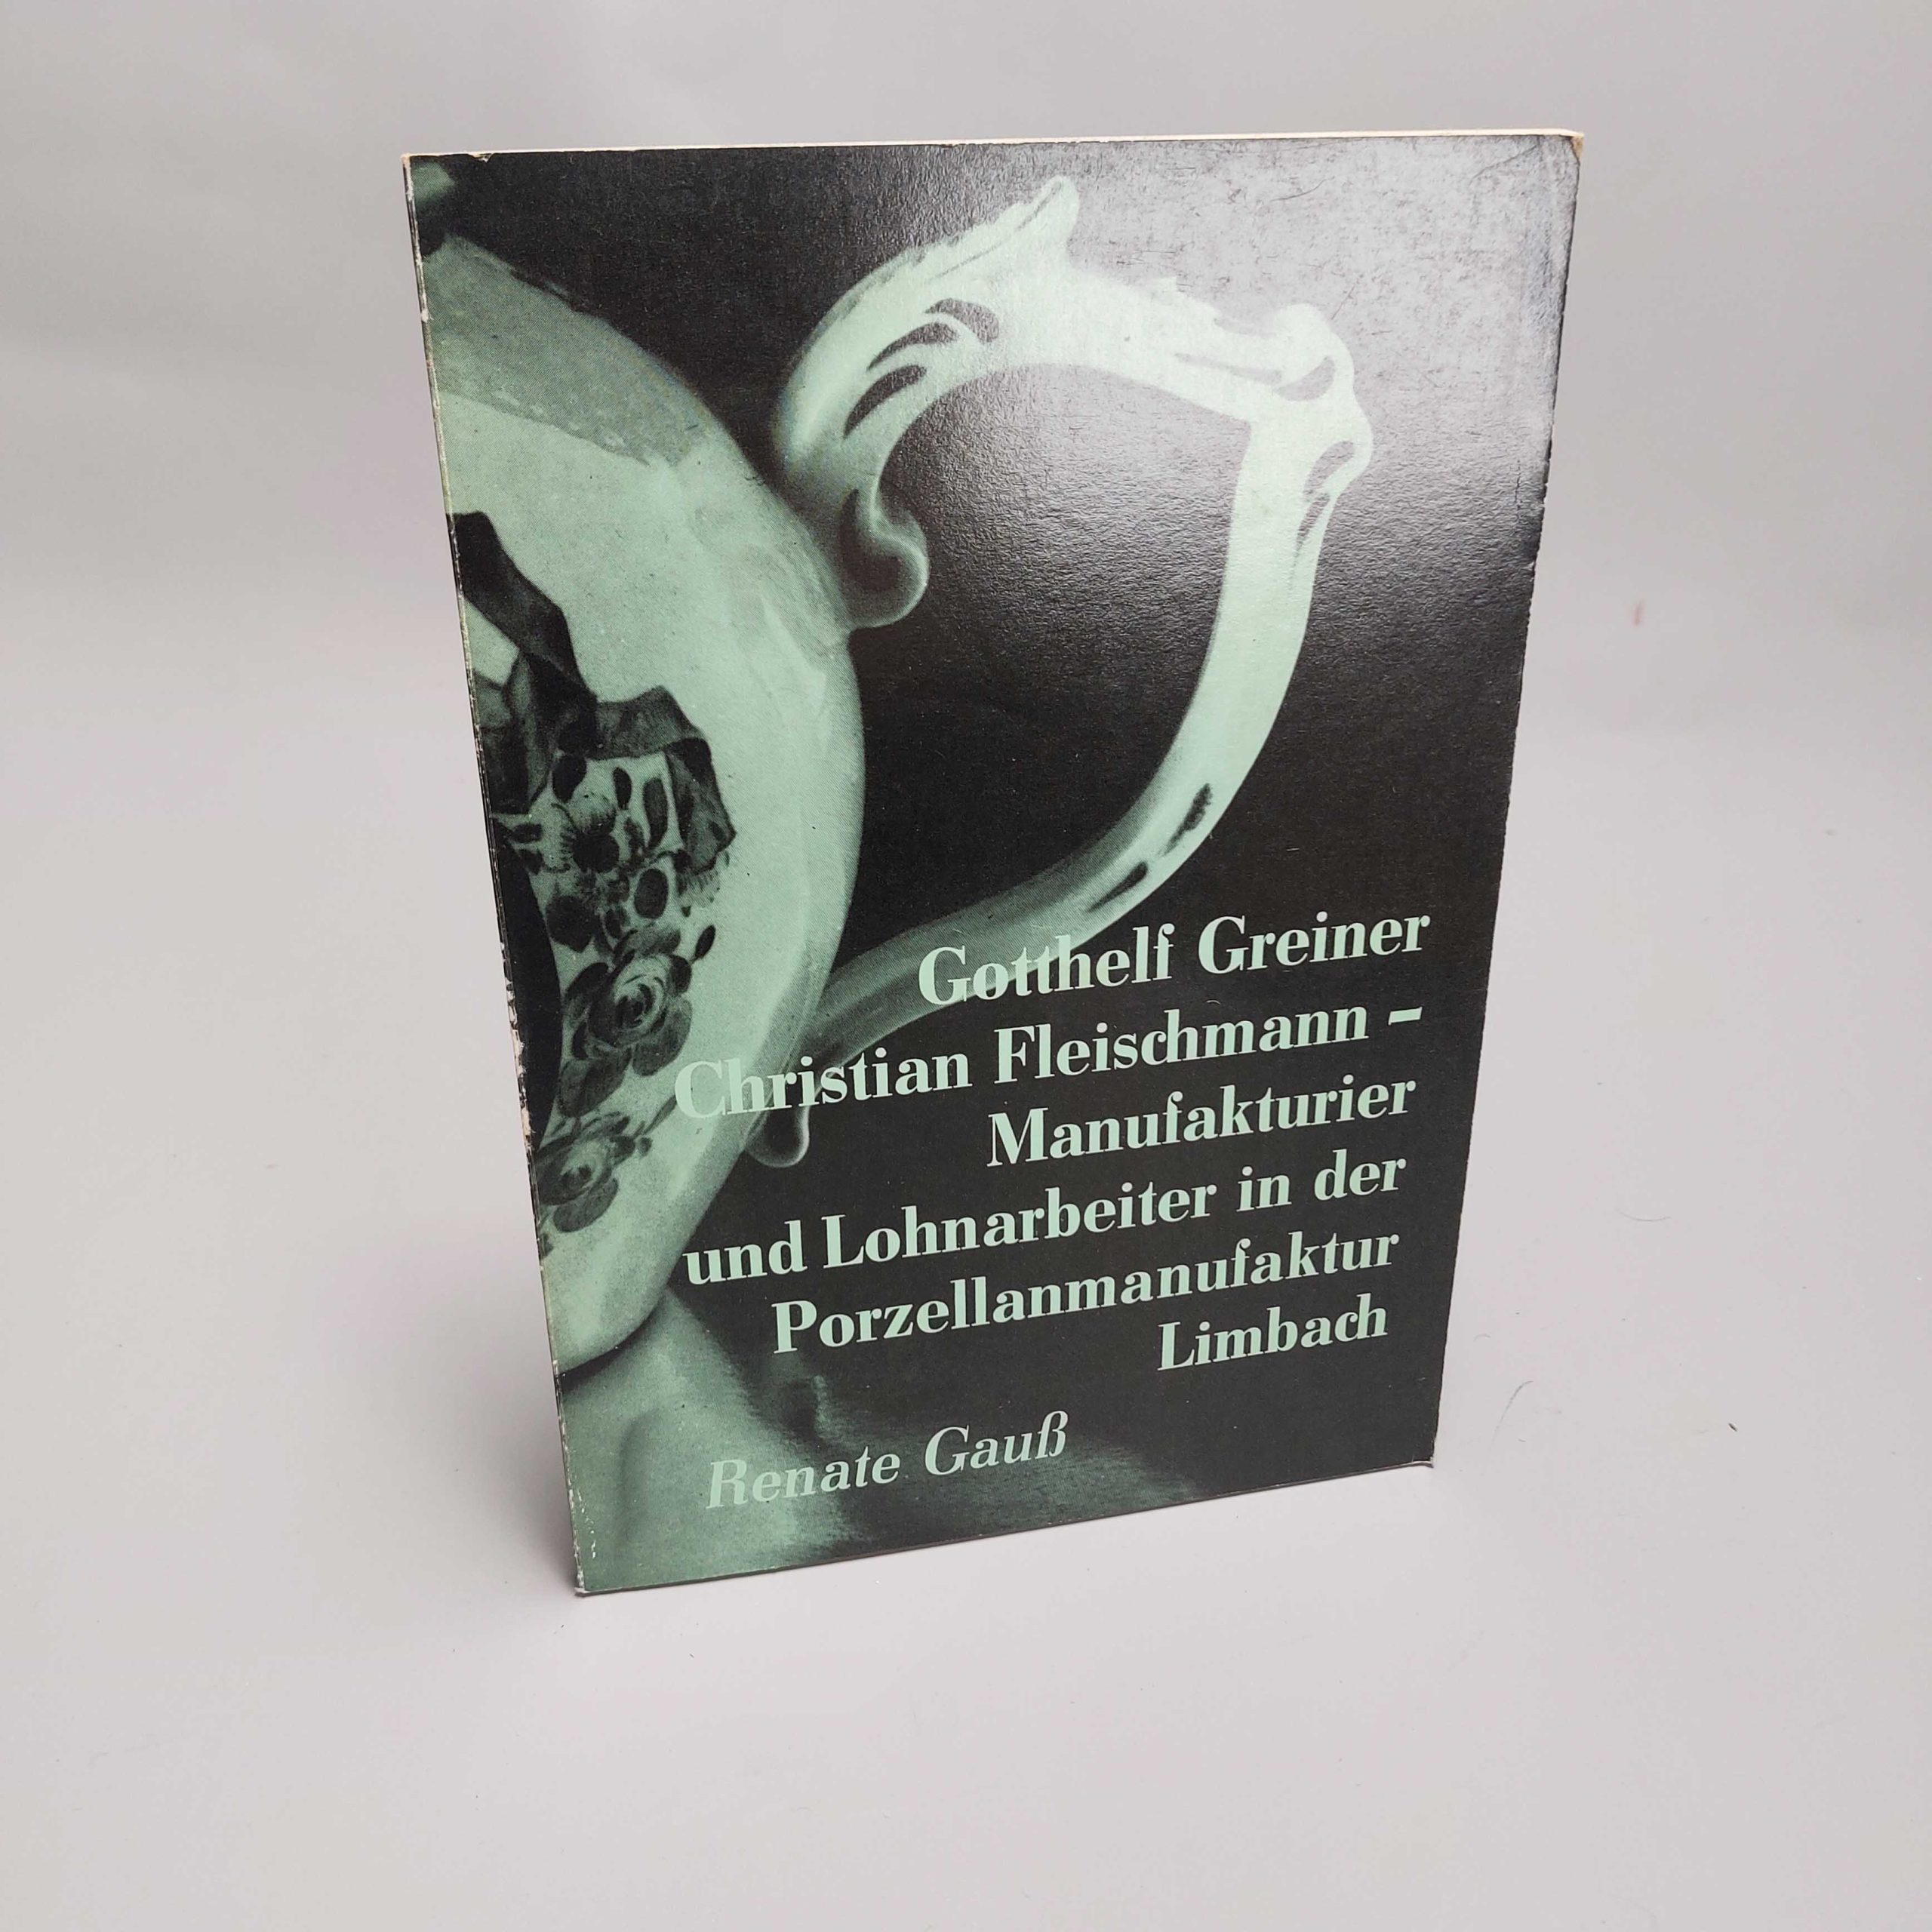 Reference Book European Porcelain – Manufacturier und Lohnarbeiter in der Porzellanmanufaktur Limbach.